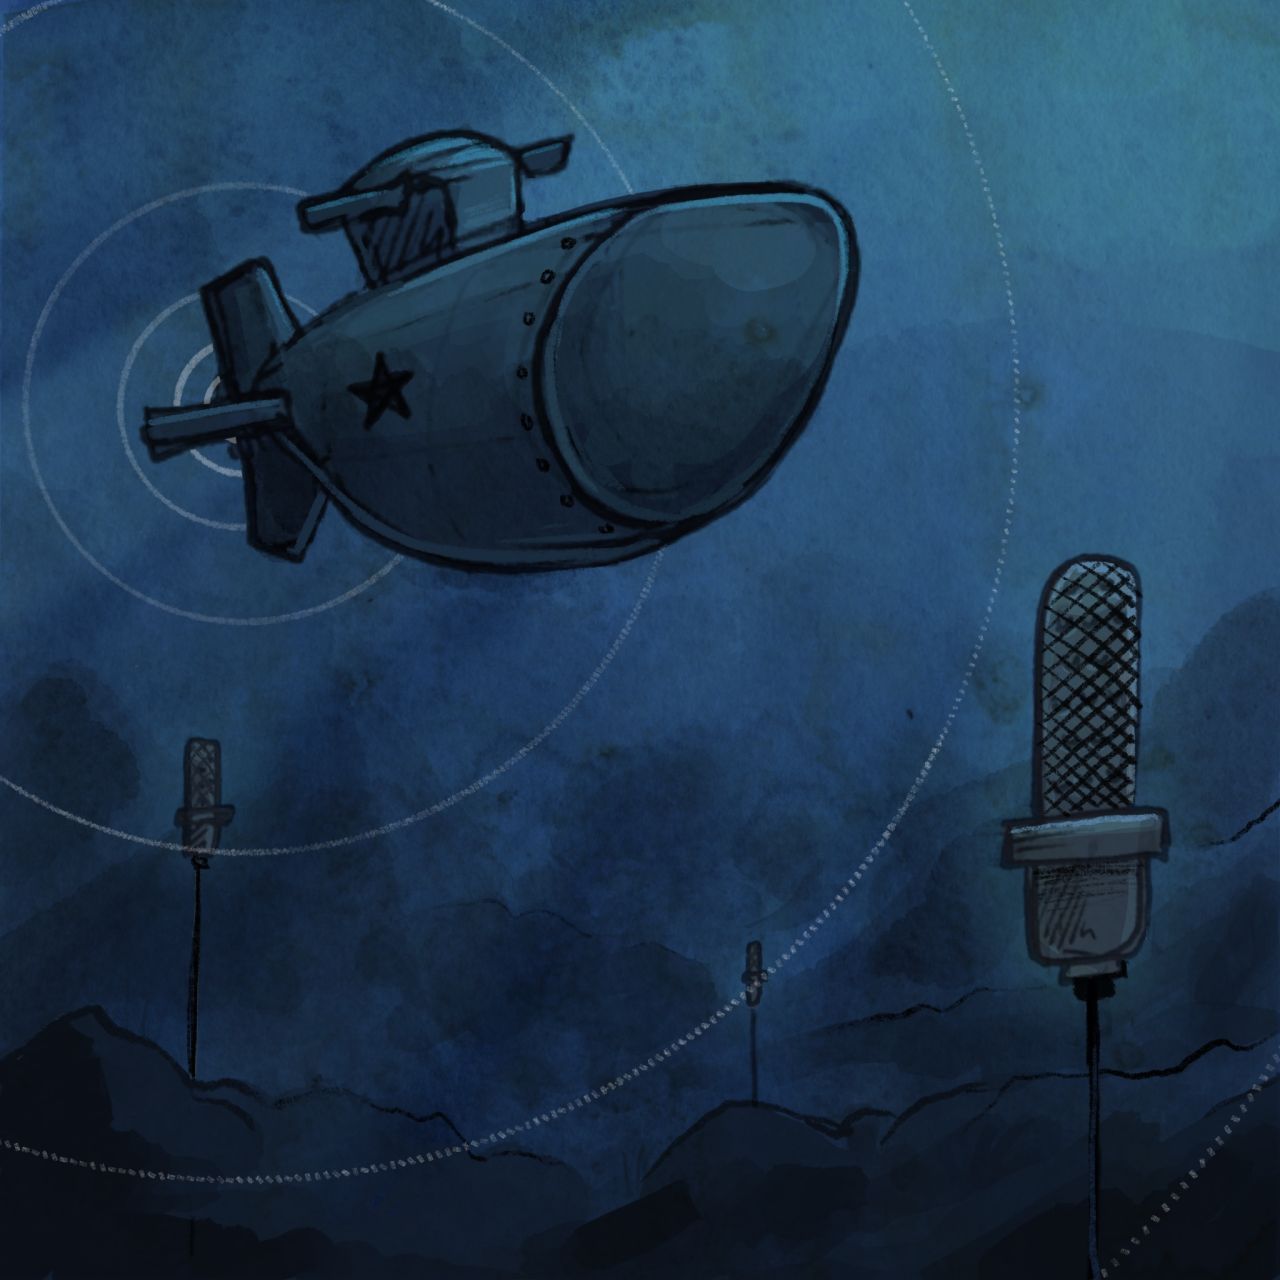 Die U.S. Navy schuf während des Kalten Krieges ein riesiges Unterwasser-Spionage-Netzwerk, das Sound Surveillance System (SOSUS). In den Ozeanen installierte sie geheime Unterwasser-Mikros ("Hydrophone"), um feindliche U-Boot-Angriffe der Sowjets auszuspionieren. 1989 empfingen die Hydrophone erstmals ein sonderbares Signal vor der Westküste der USA.